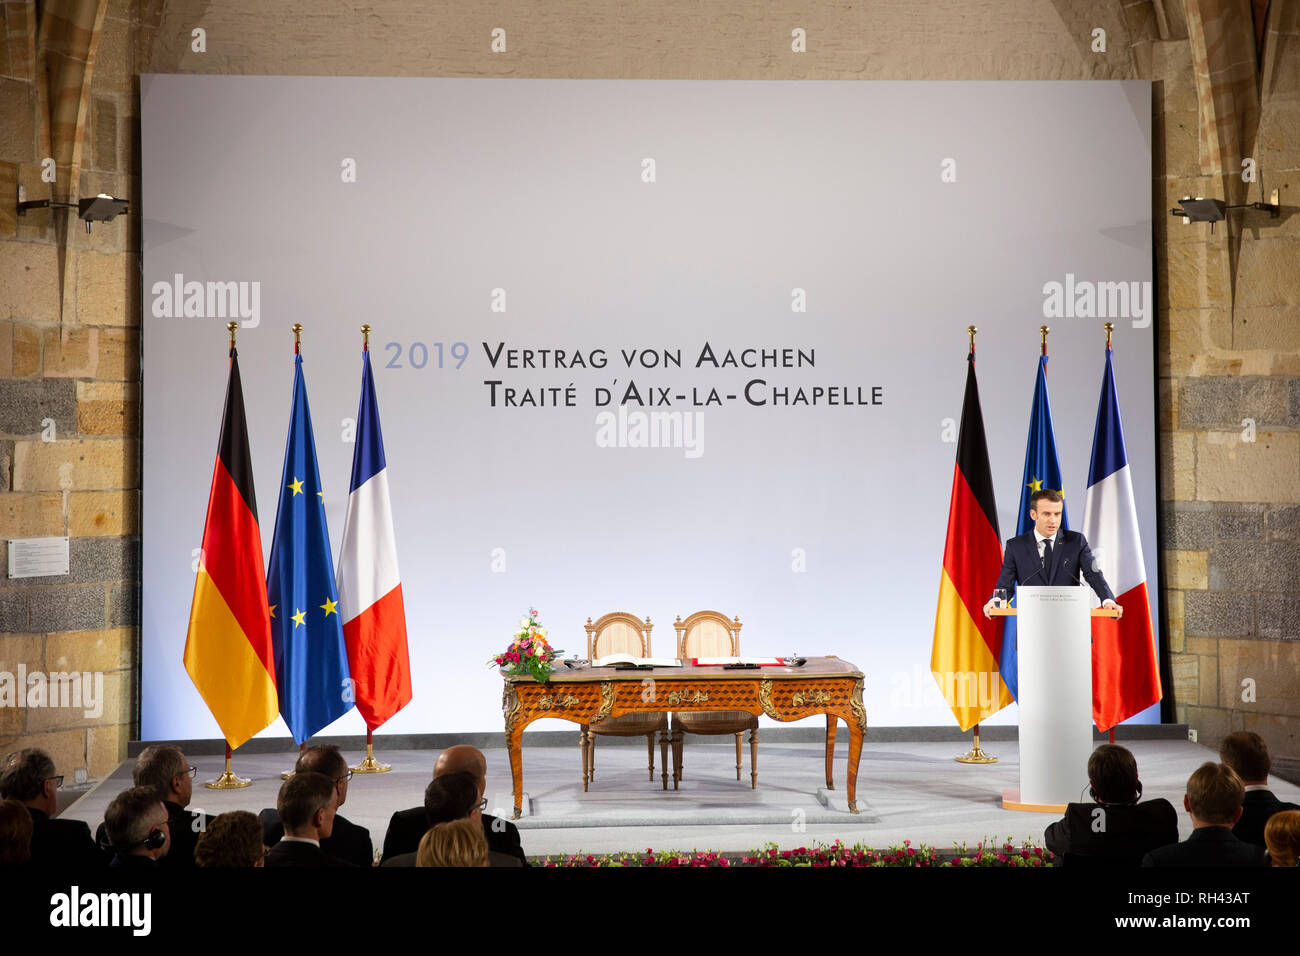 Emmanuel Macron bei der Erneuerung des deutsch-französischen Freundschaftsvertrages im Rathaus. Aachen, 22.01.2019 Stock Photo